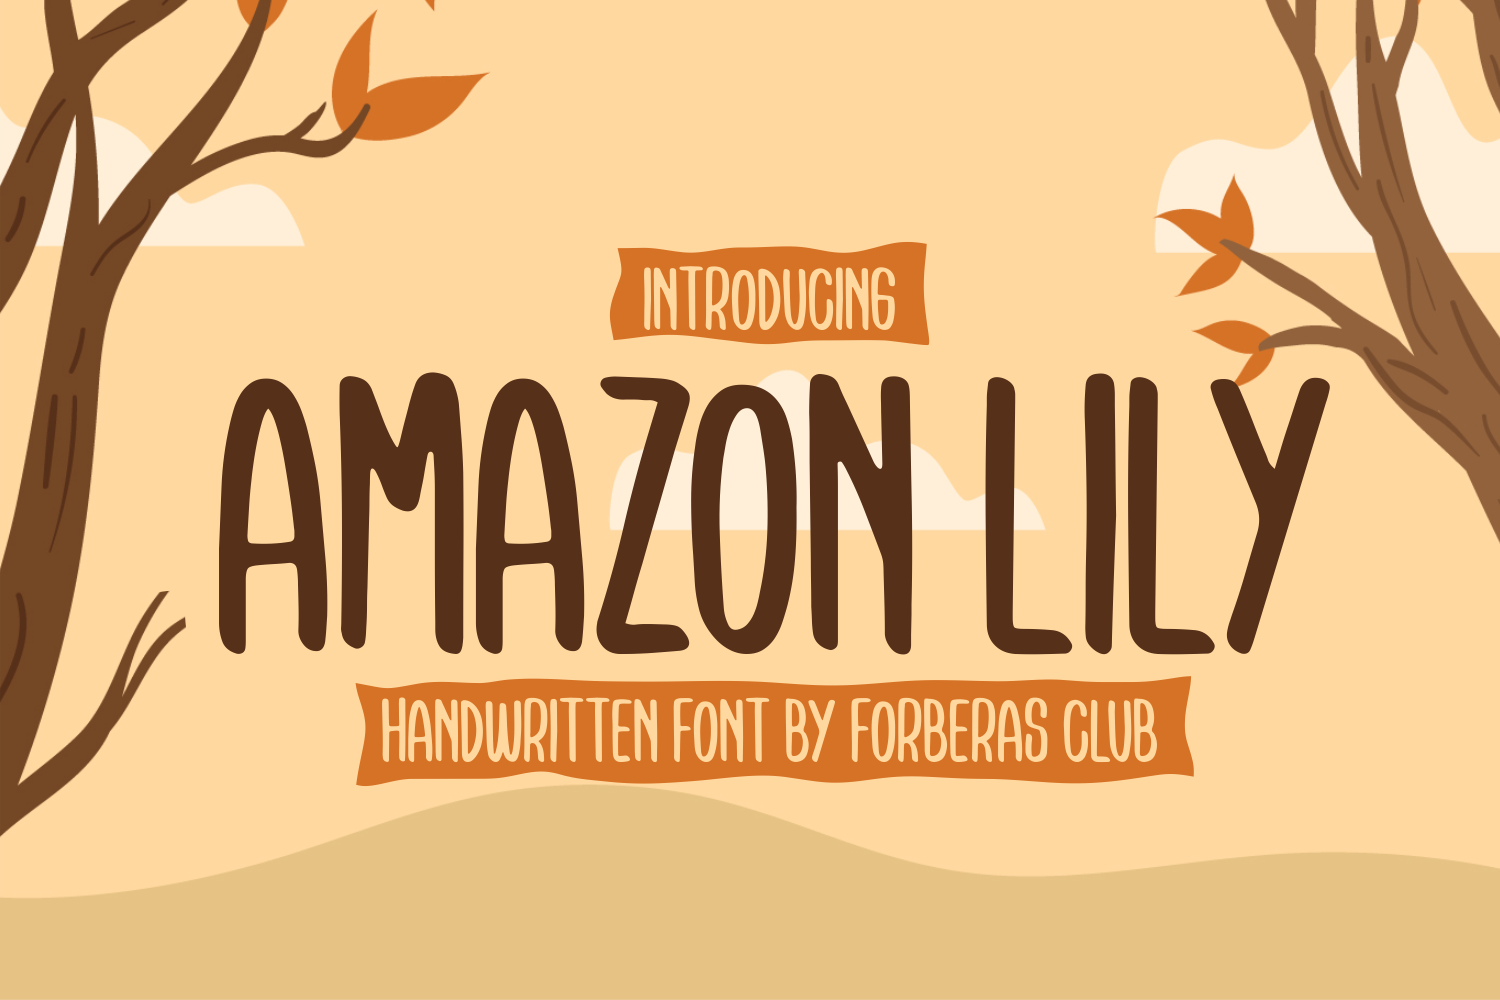 Amazon Lily